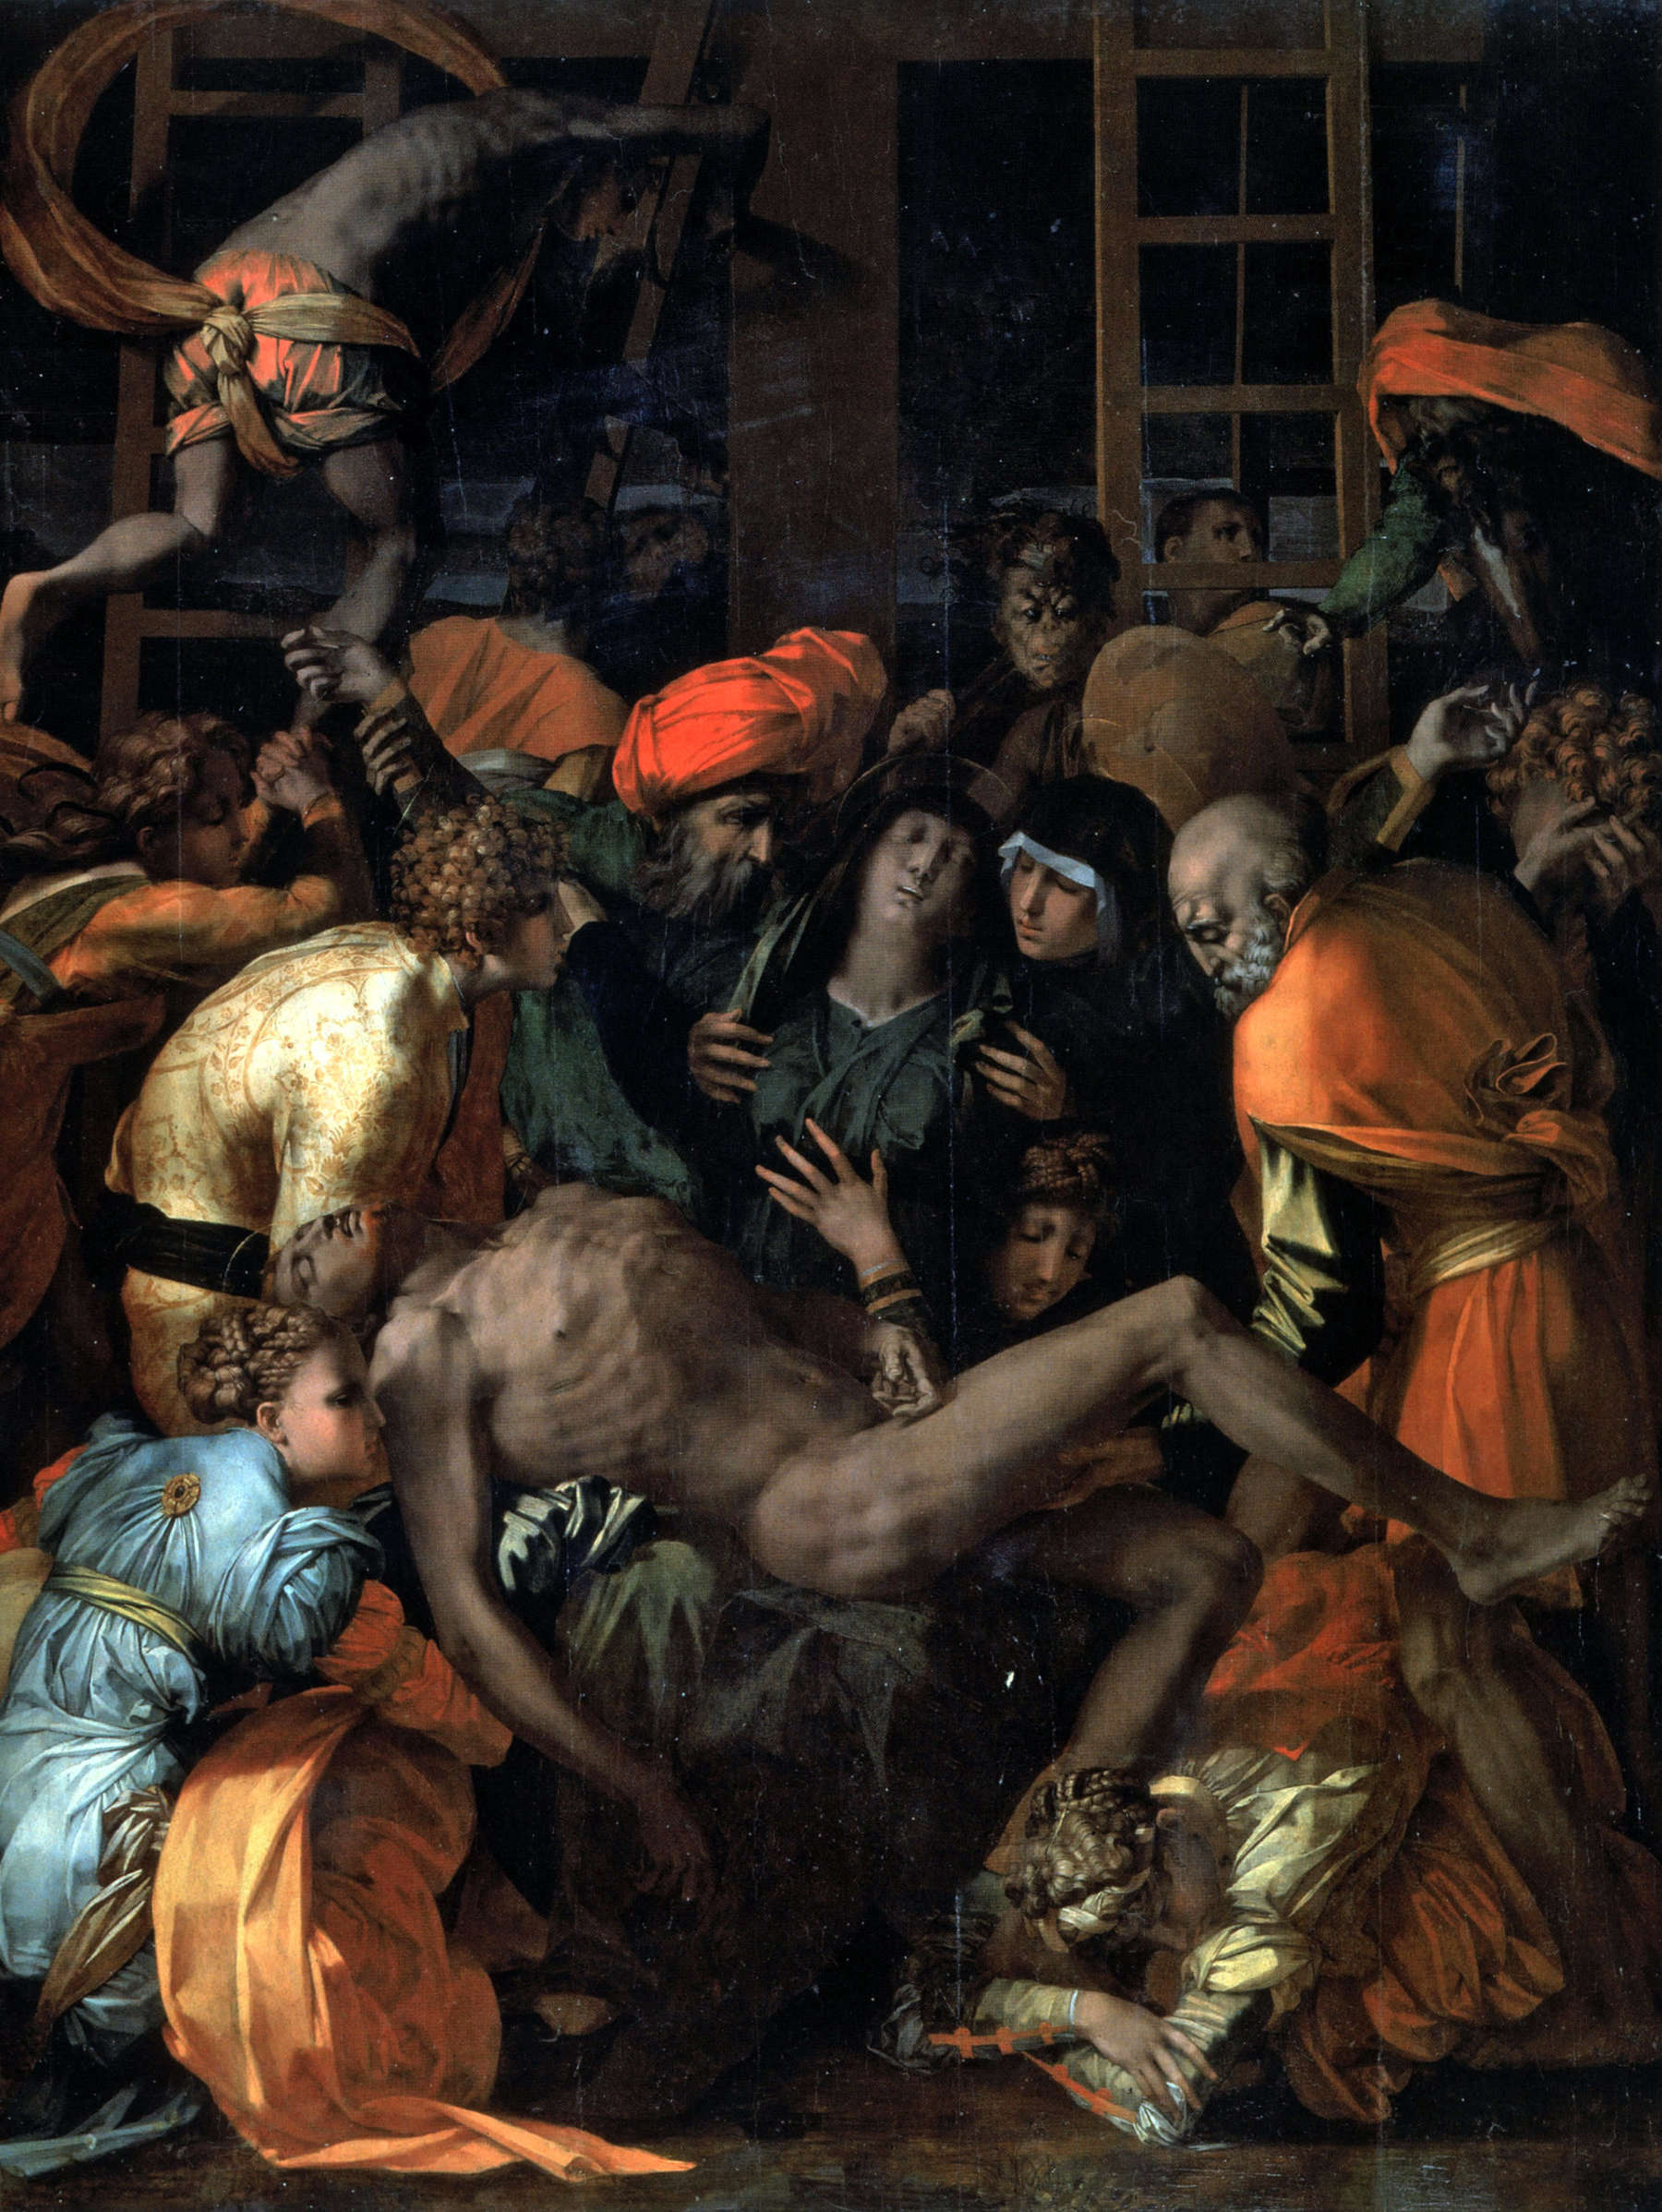 Rosso Fiorentino, Lamentation over the Dead Christ (1528; oil on panel, 270 x 201 cm; Sansepolcro, Church of San Lorenzo)